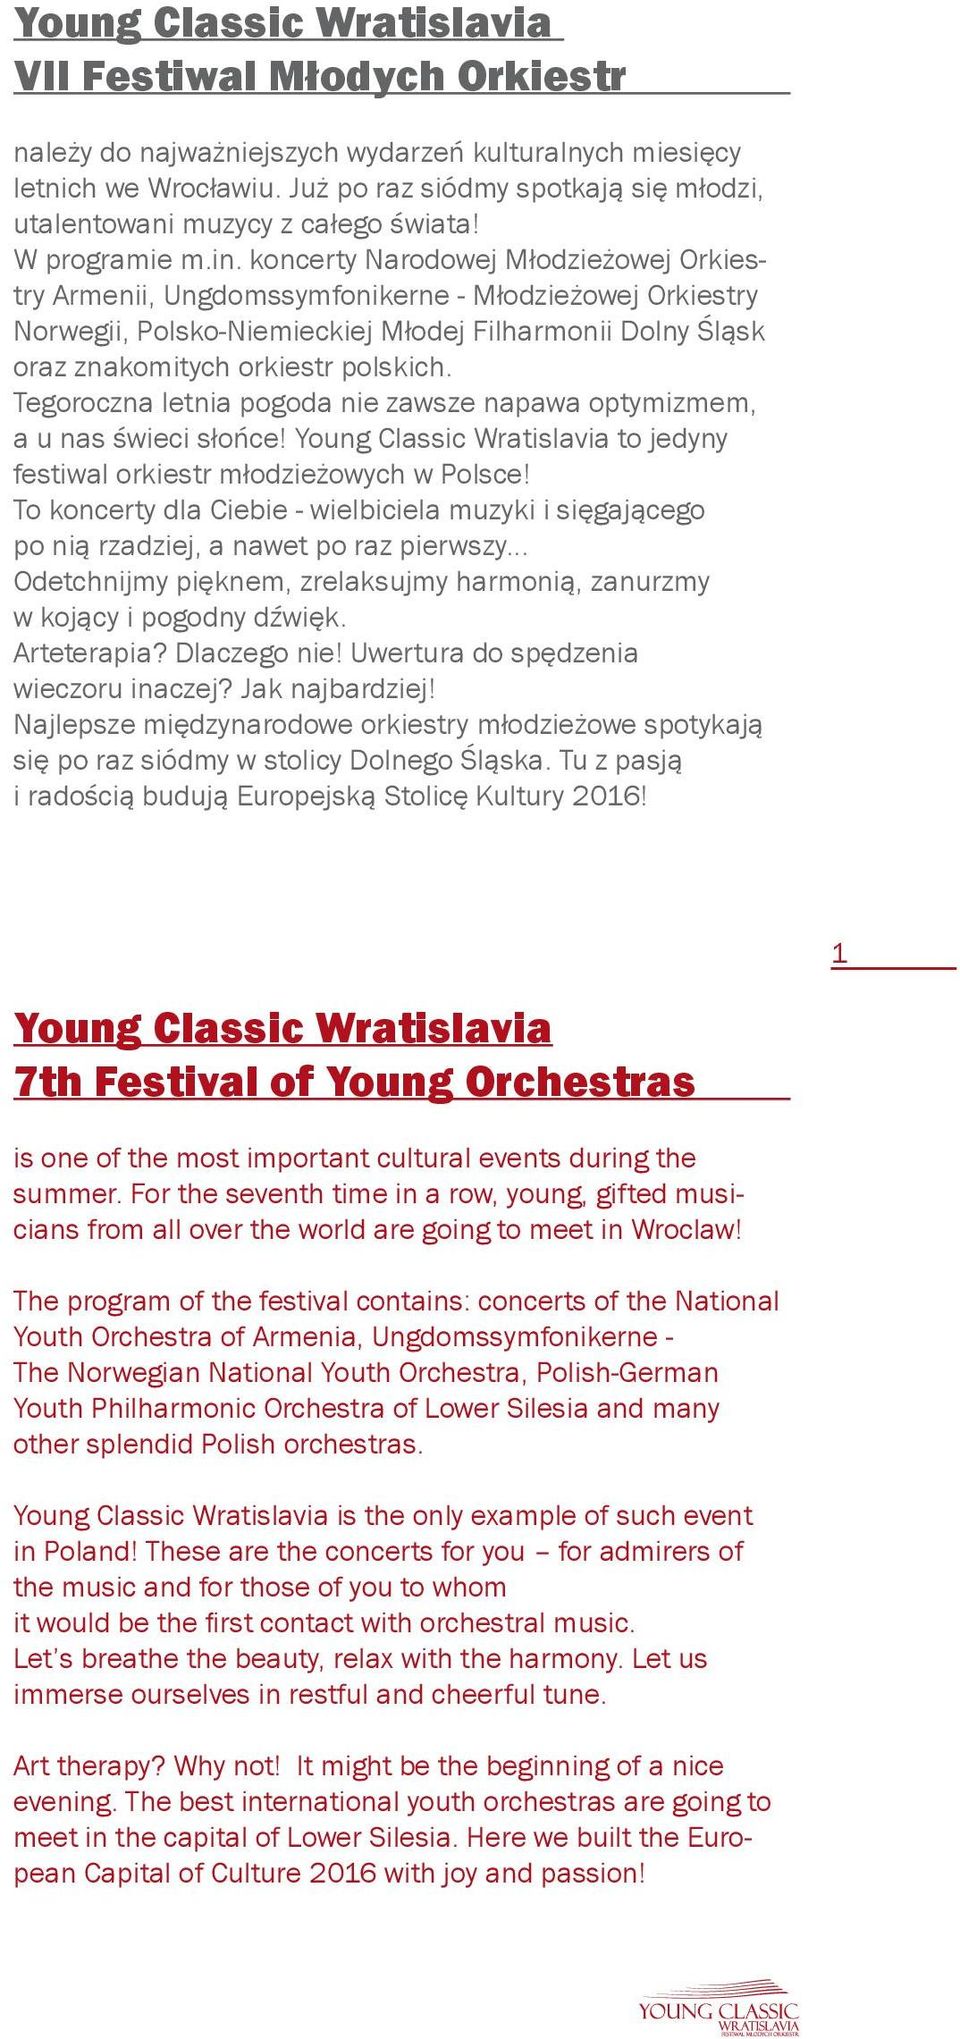 koncerty Narodowej Młodzieżowej Orkiestry Armenii, Ungdomssymfonikerne - Młodzieżowej Orkiestry Norwegii, Polsko-Niemieckiej Młodej Filharmonii Dolny Śląsk oraz znakomitych orkiestr polskich.